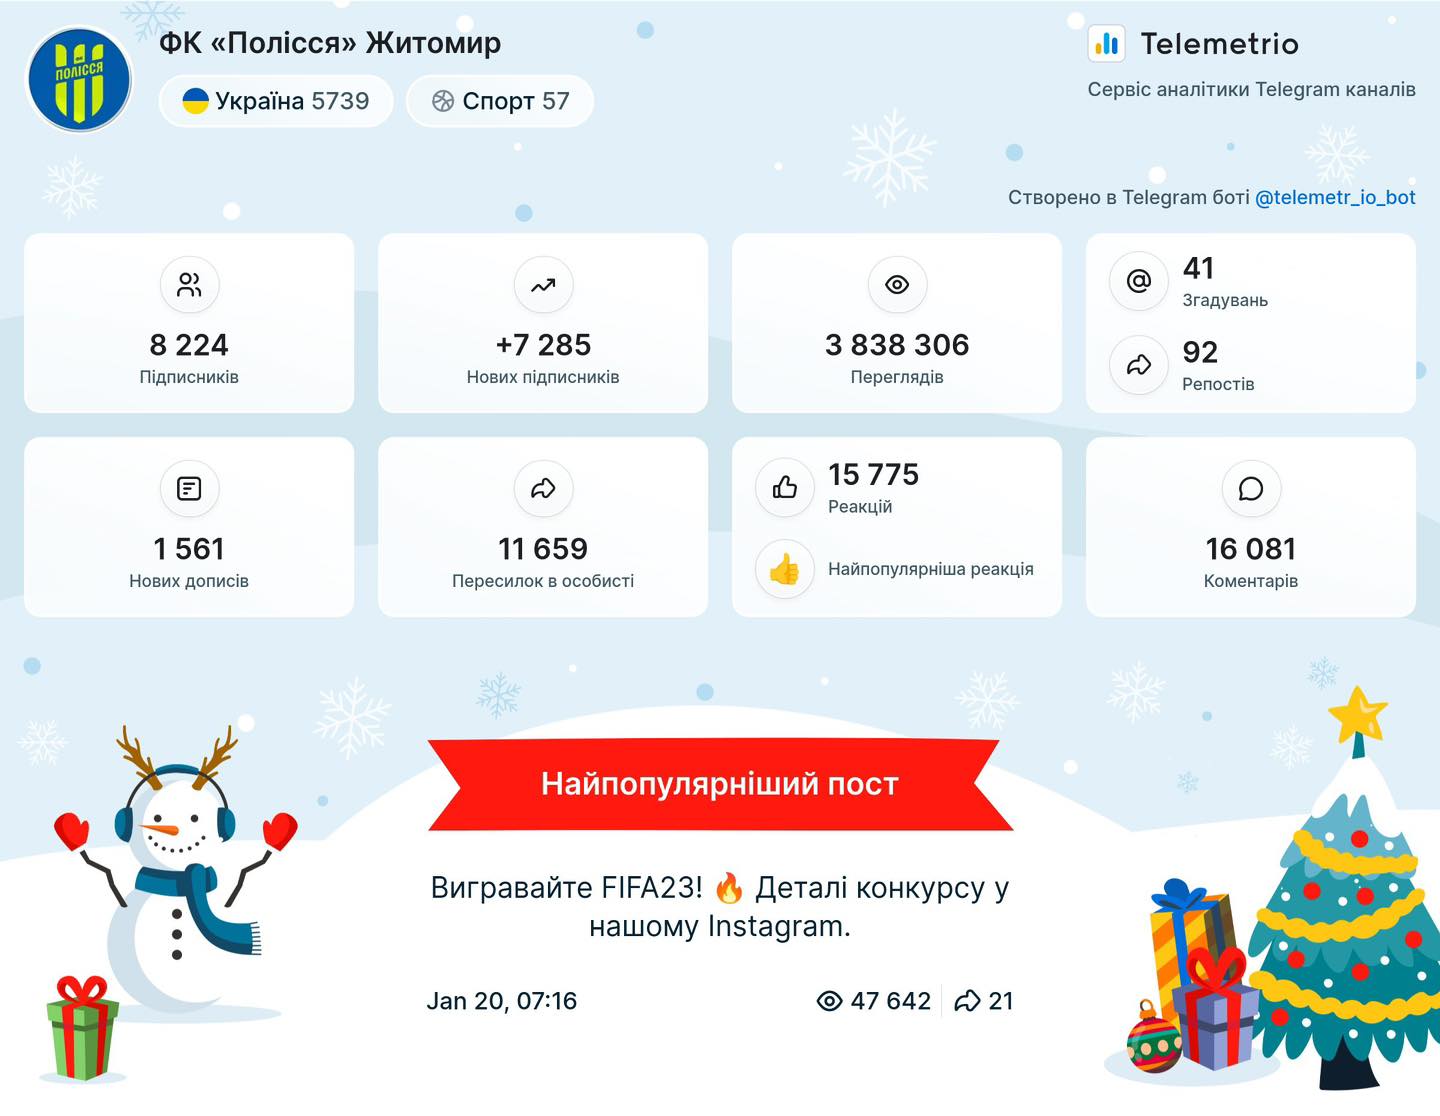 Телеграм-канал ФК "Кривбас" - в ТОП-3 серед клубів УПЛ за підсумками 2023 року